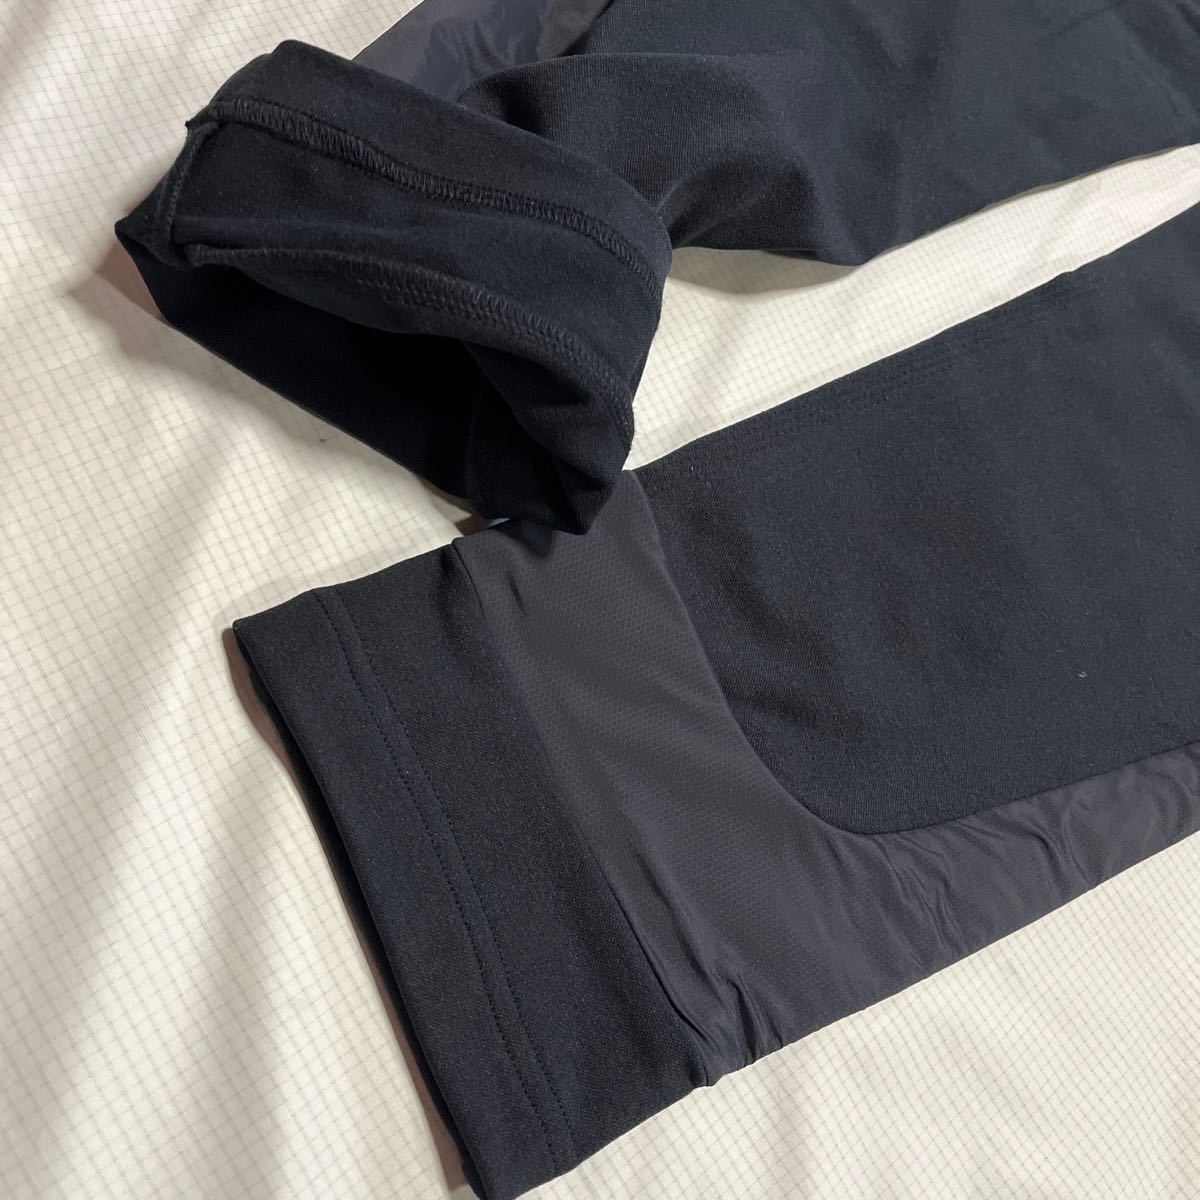  новый товар стандартный товар Pearly Gates размер 6 супер стрейч вязаный брюки-джоггеры темно синий джерси брюки тренировка одежда бесплатная доставка 